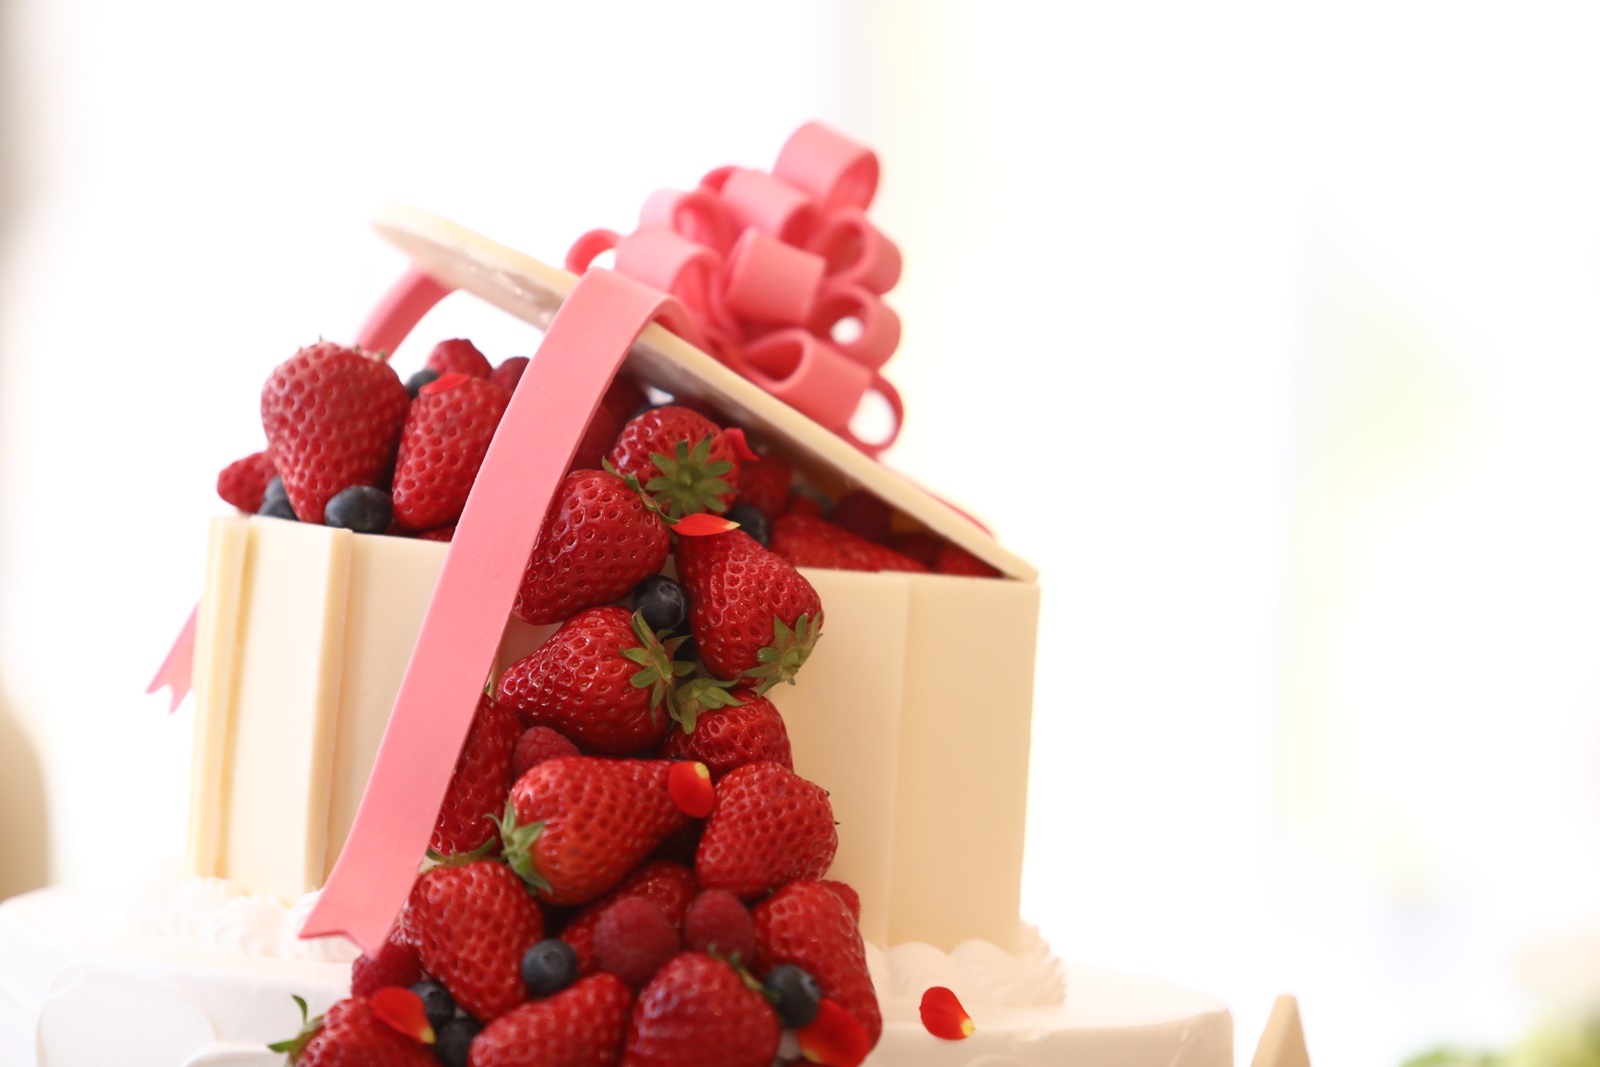 苺があふれ出たような可愛いケーキ ニュース ブログ 公式 ヴィラ アンジェリカ 滋賀 近江八幡の結婚式場